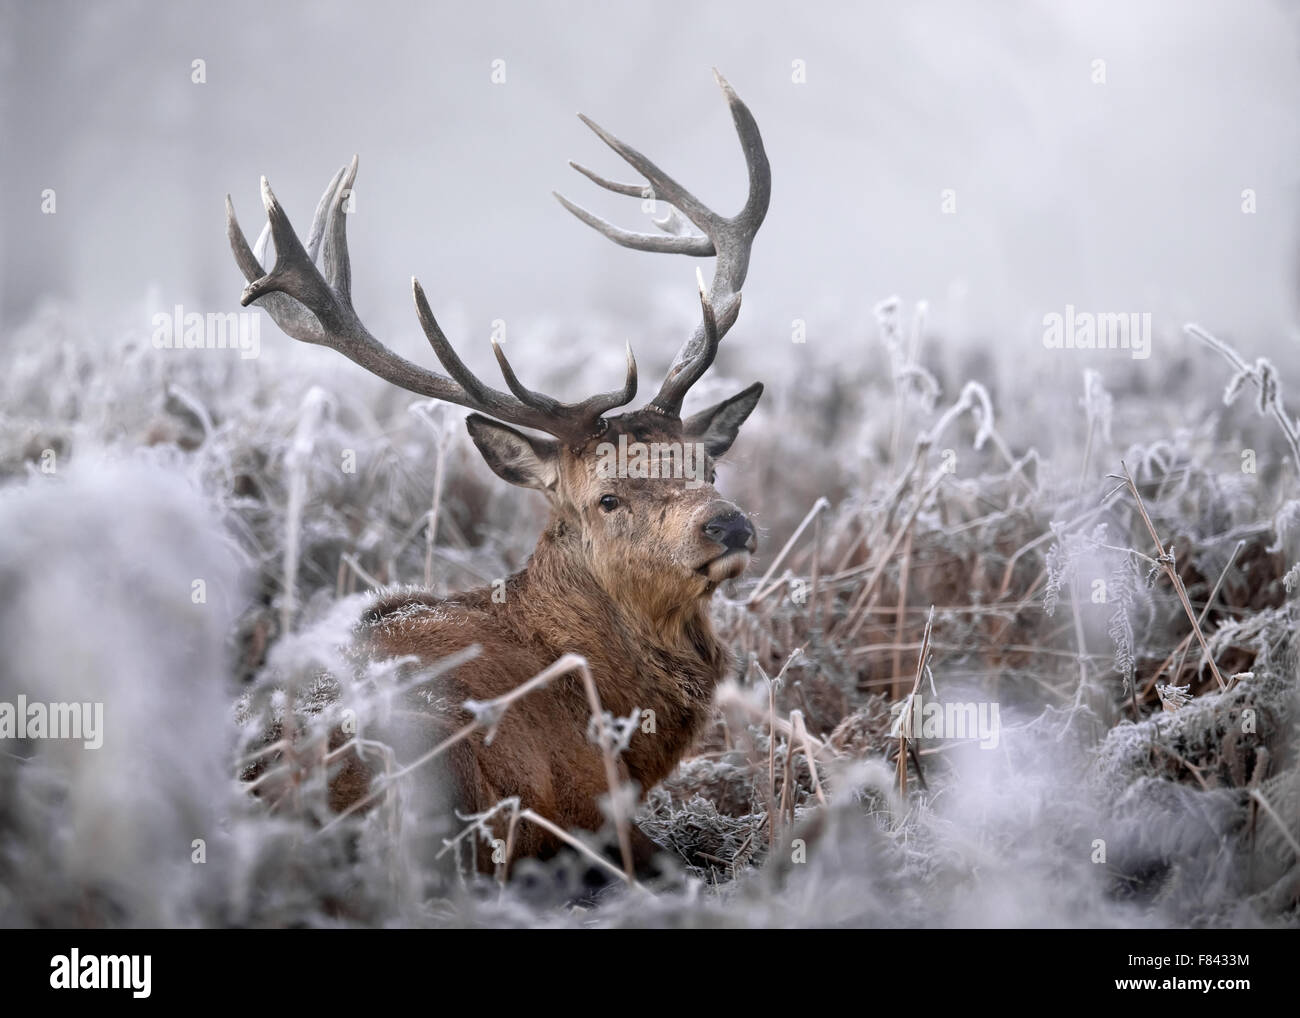 Red deer in winter, UK. Stock Photo